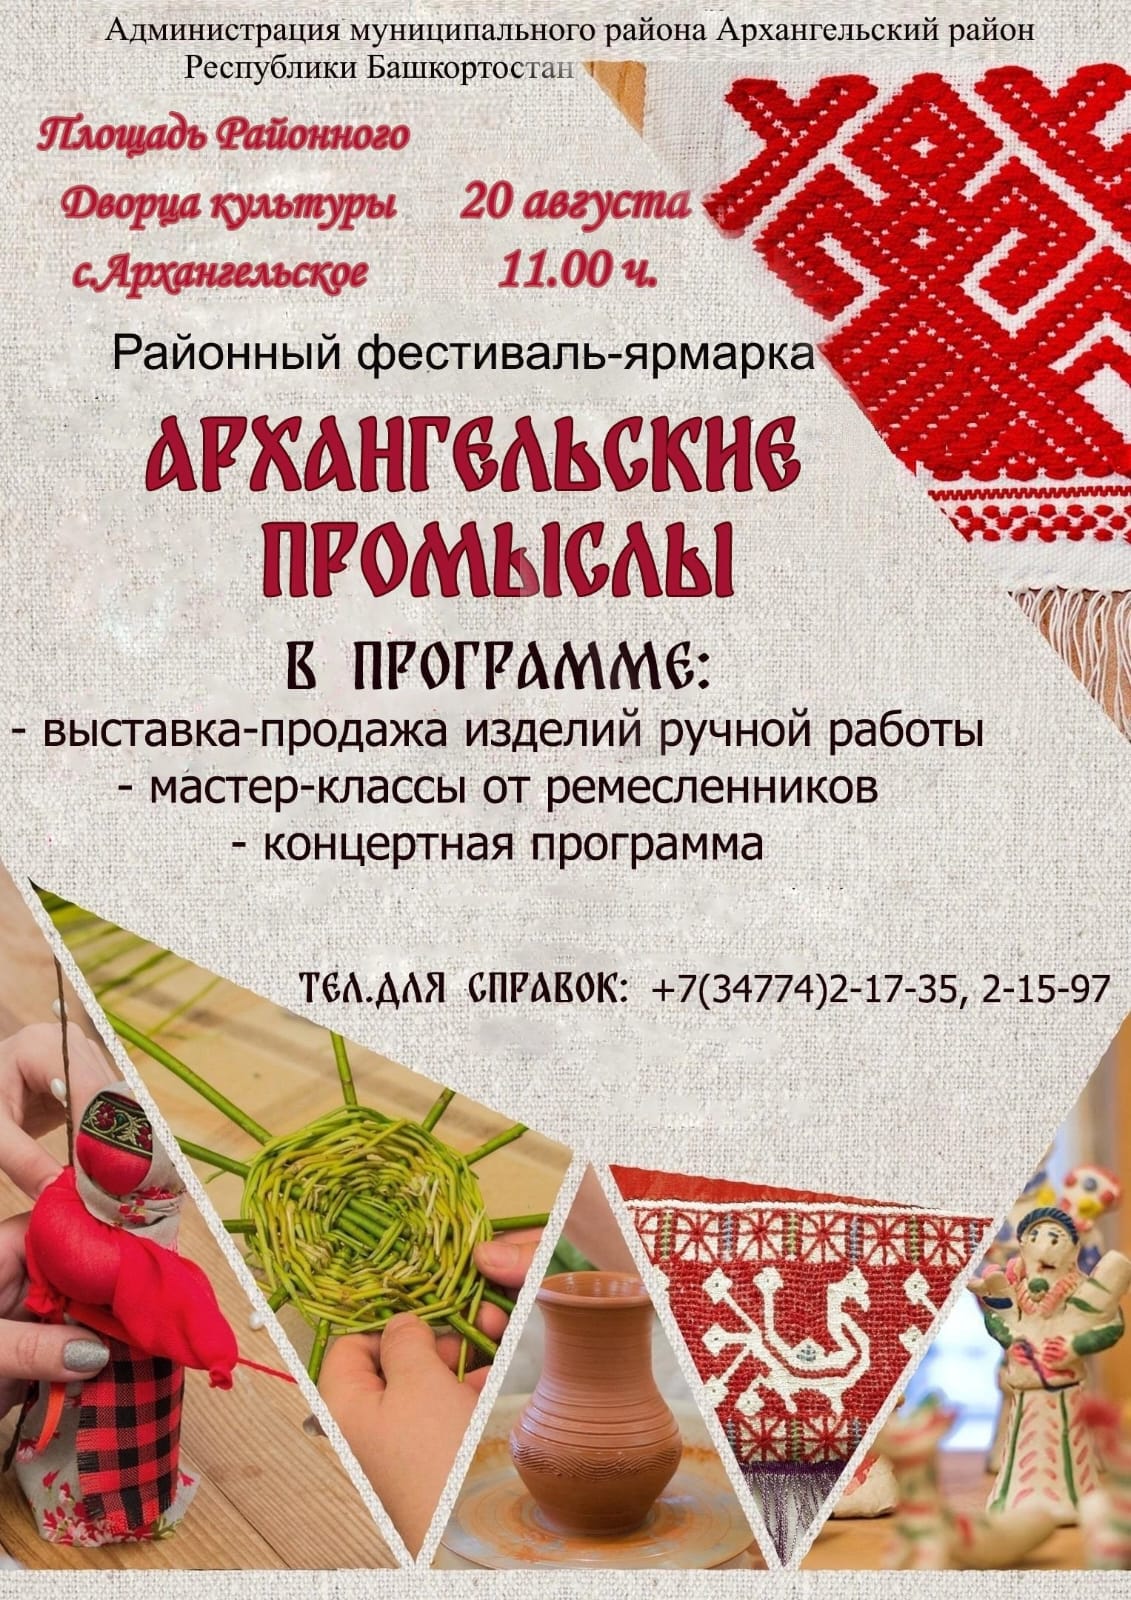 Завтра в селе Архангельское пройдет фестиваль-ярмарка «Архангельские промыслы»